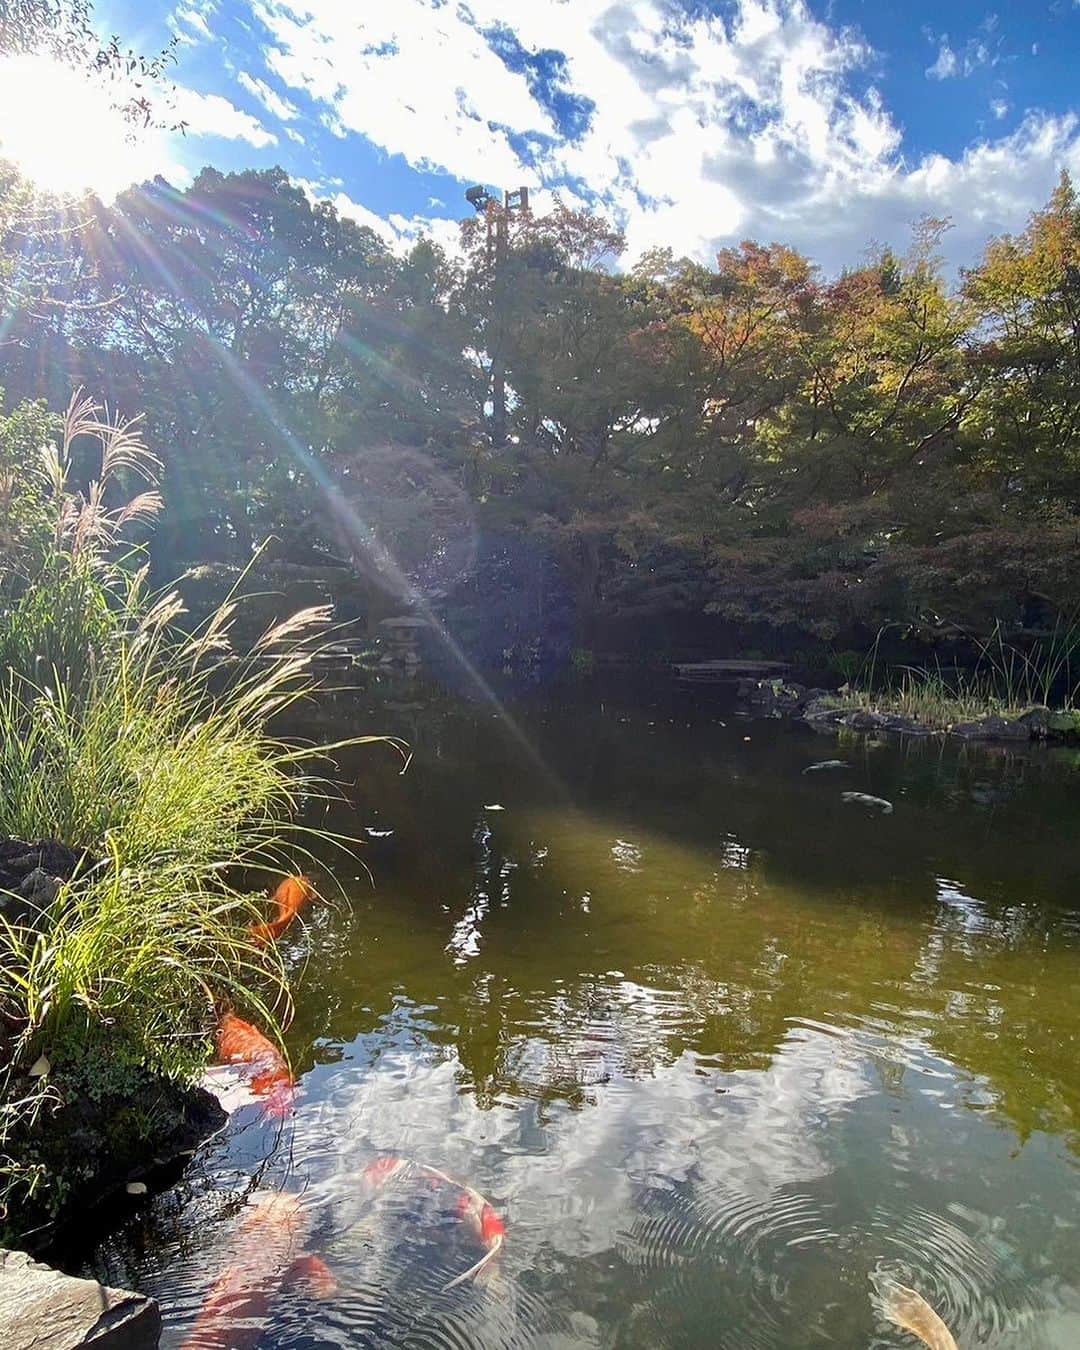 ホテル ニューオータニのインスタグラム：「秋晴れの日本庭園、西陽に照らされたススキの穂が、キラキラと輝き、日本の情緒を感じることが出来ます。  #秋 #すすき #秋の風景 #秋の花 #日本庭園 #庭園 #庭 #autumn #autumnvibes  #japanesegarden #japnesegardens #tokyo #japan #tokyotrip  #tokyotravel #tokyohotel  #virtualtour #japanbeauty #forbestravelguide #futuretravelguide #thepreferredlife #ホテルニューオータニ #ニューオータニ #hotelnewotani #newotani #ホテル #東京ホテル #ホテルステイ」